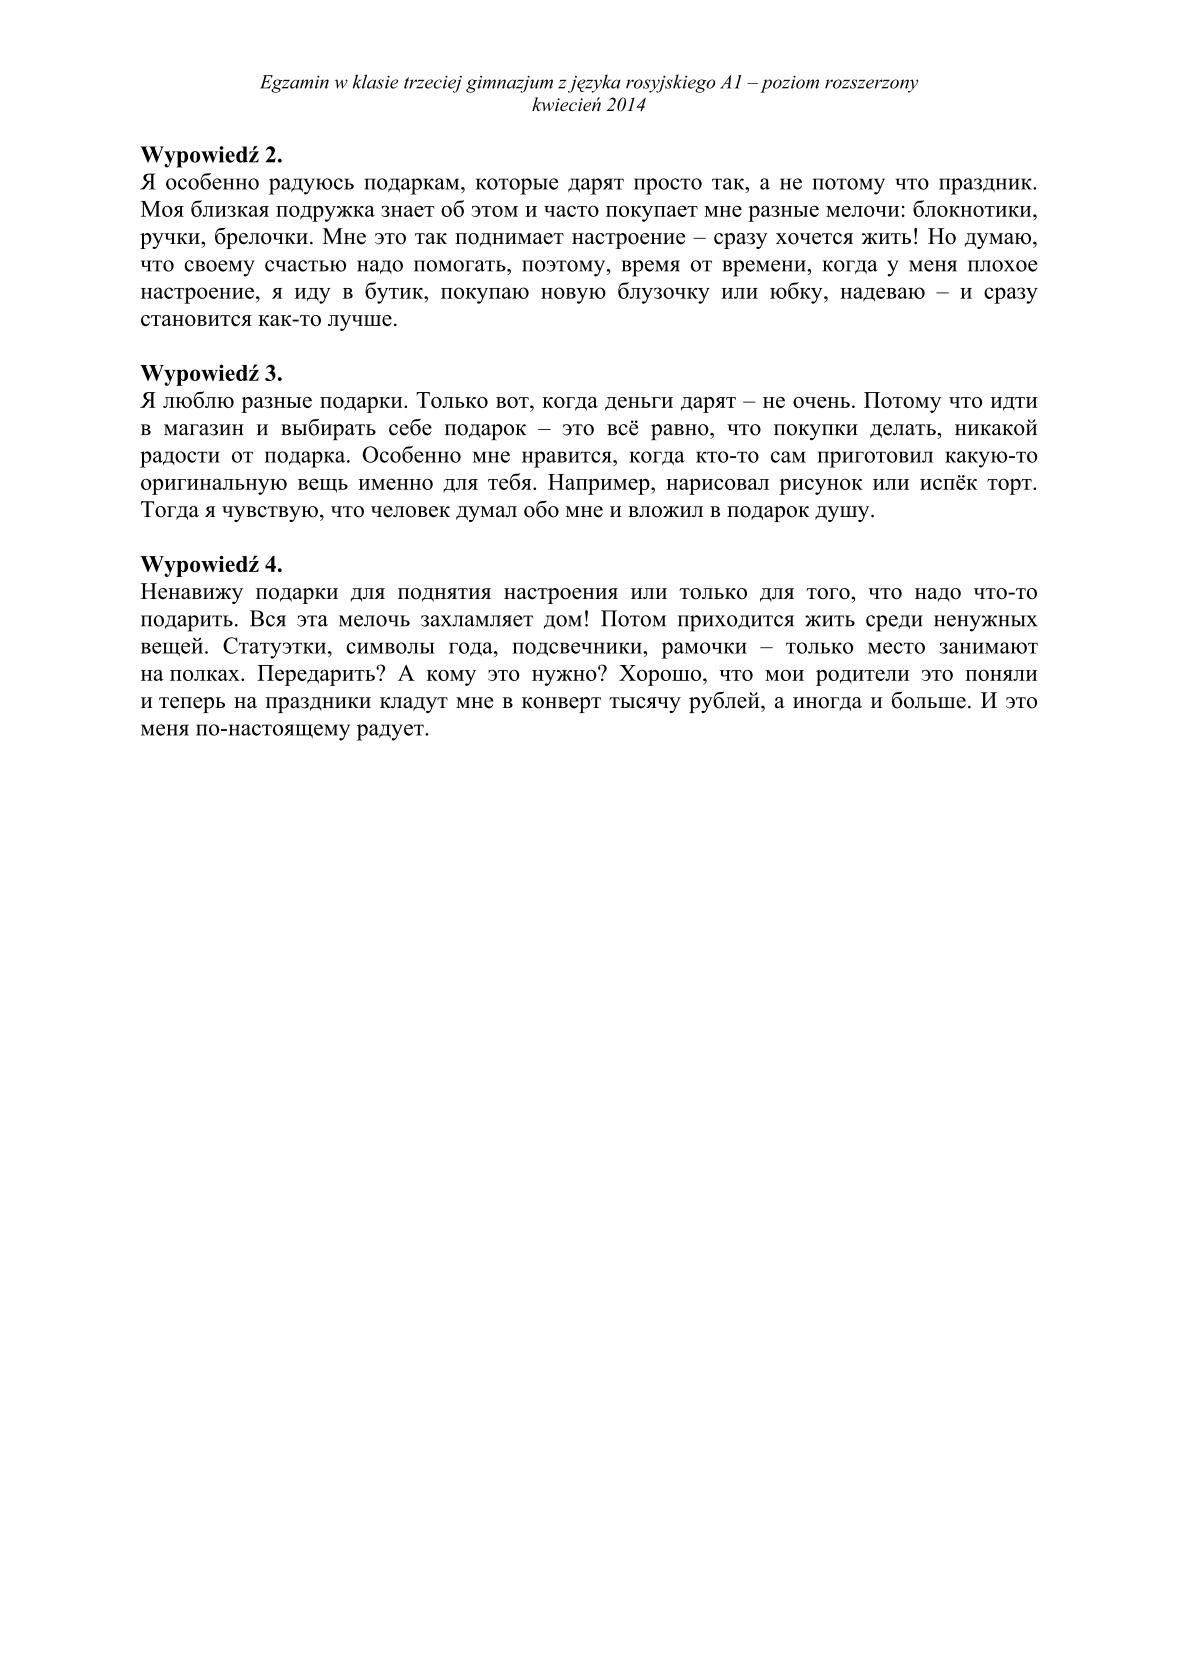 transkrypcja-rosyjski-poziom-rozszerzony-egzamin-gimnazjalny-25.04.2014-14